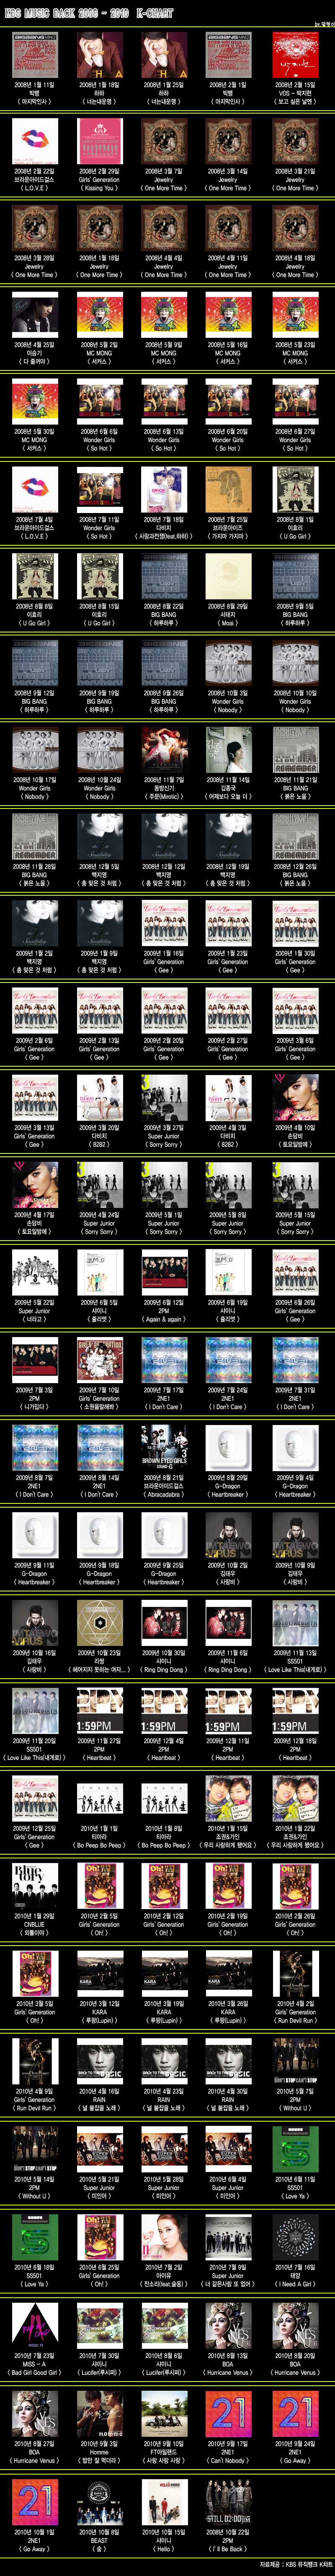 July 2010 Music Charts